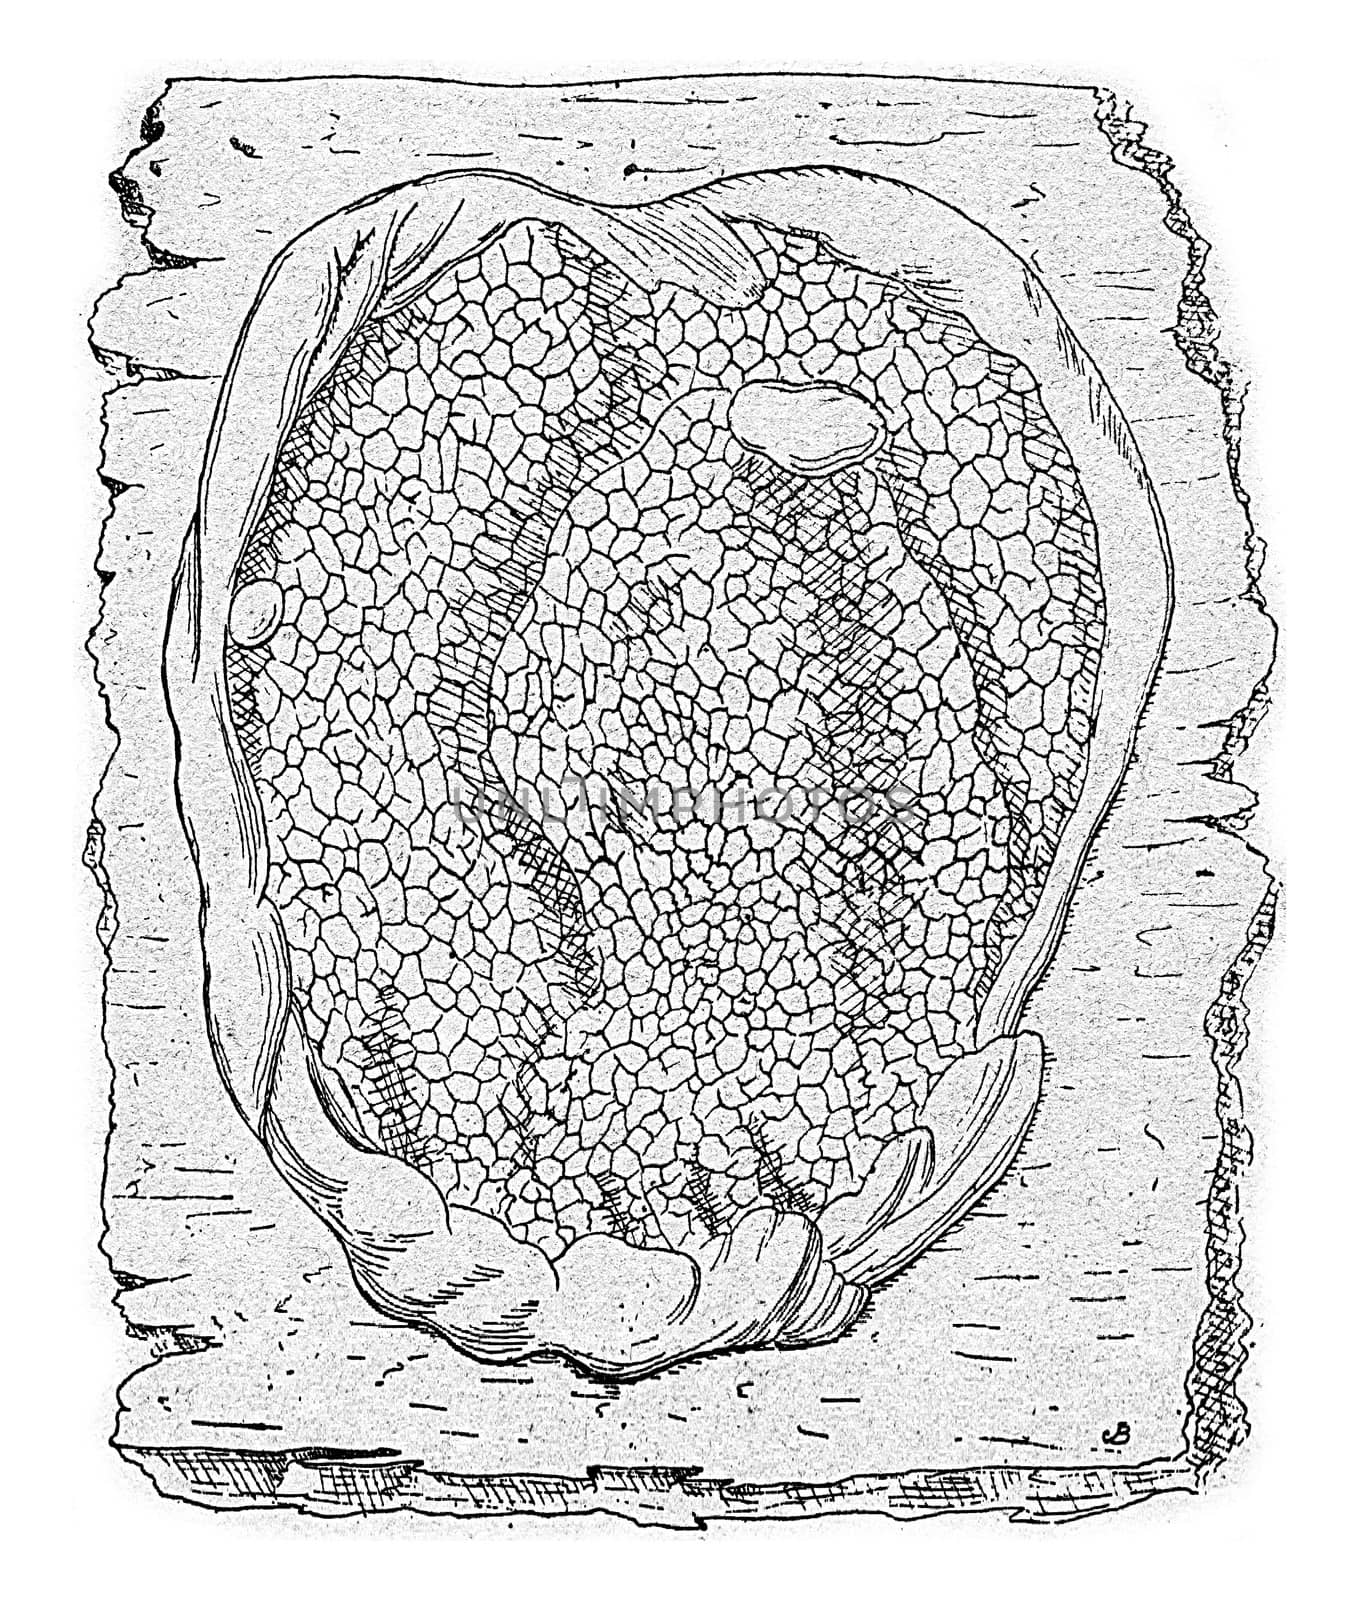 Unit of fruiting lacrymans Merulius, vintage engraved illustration.
